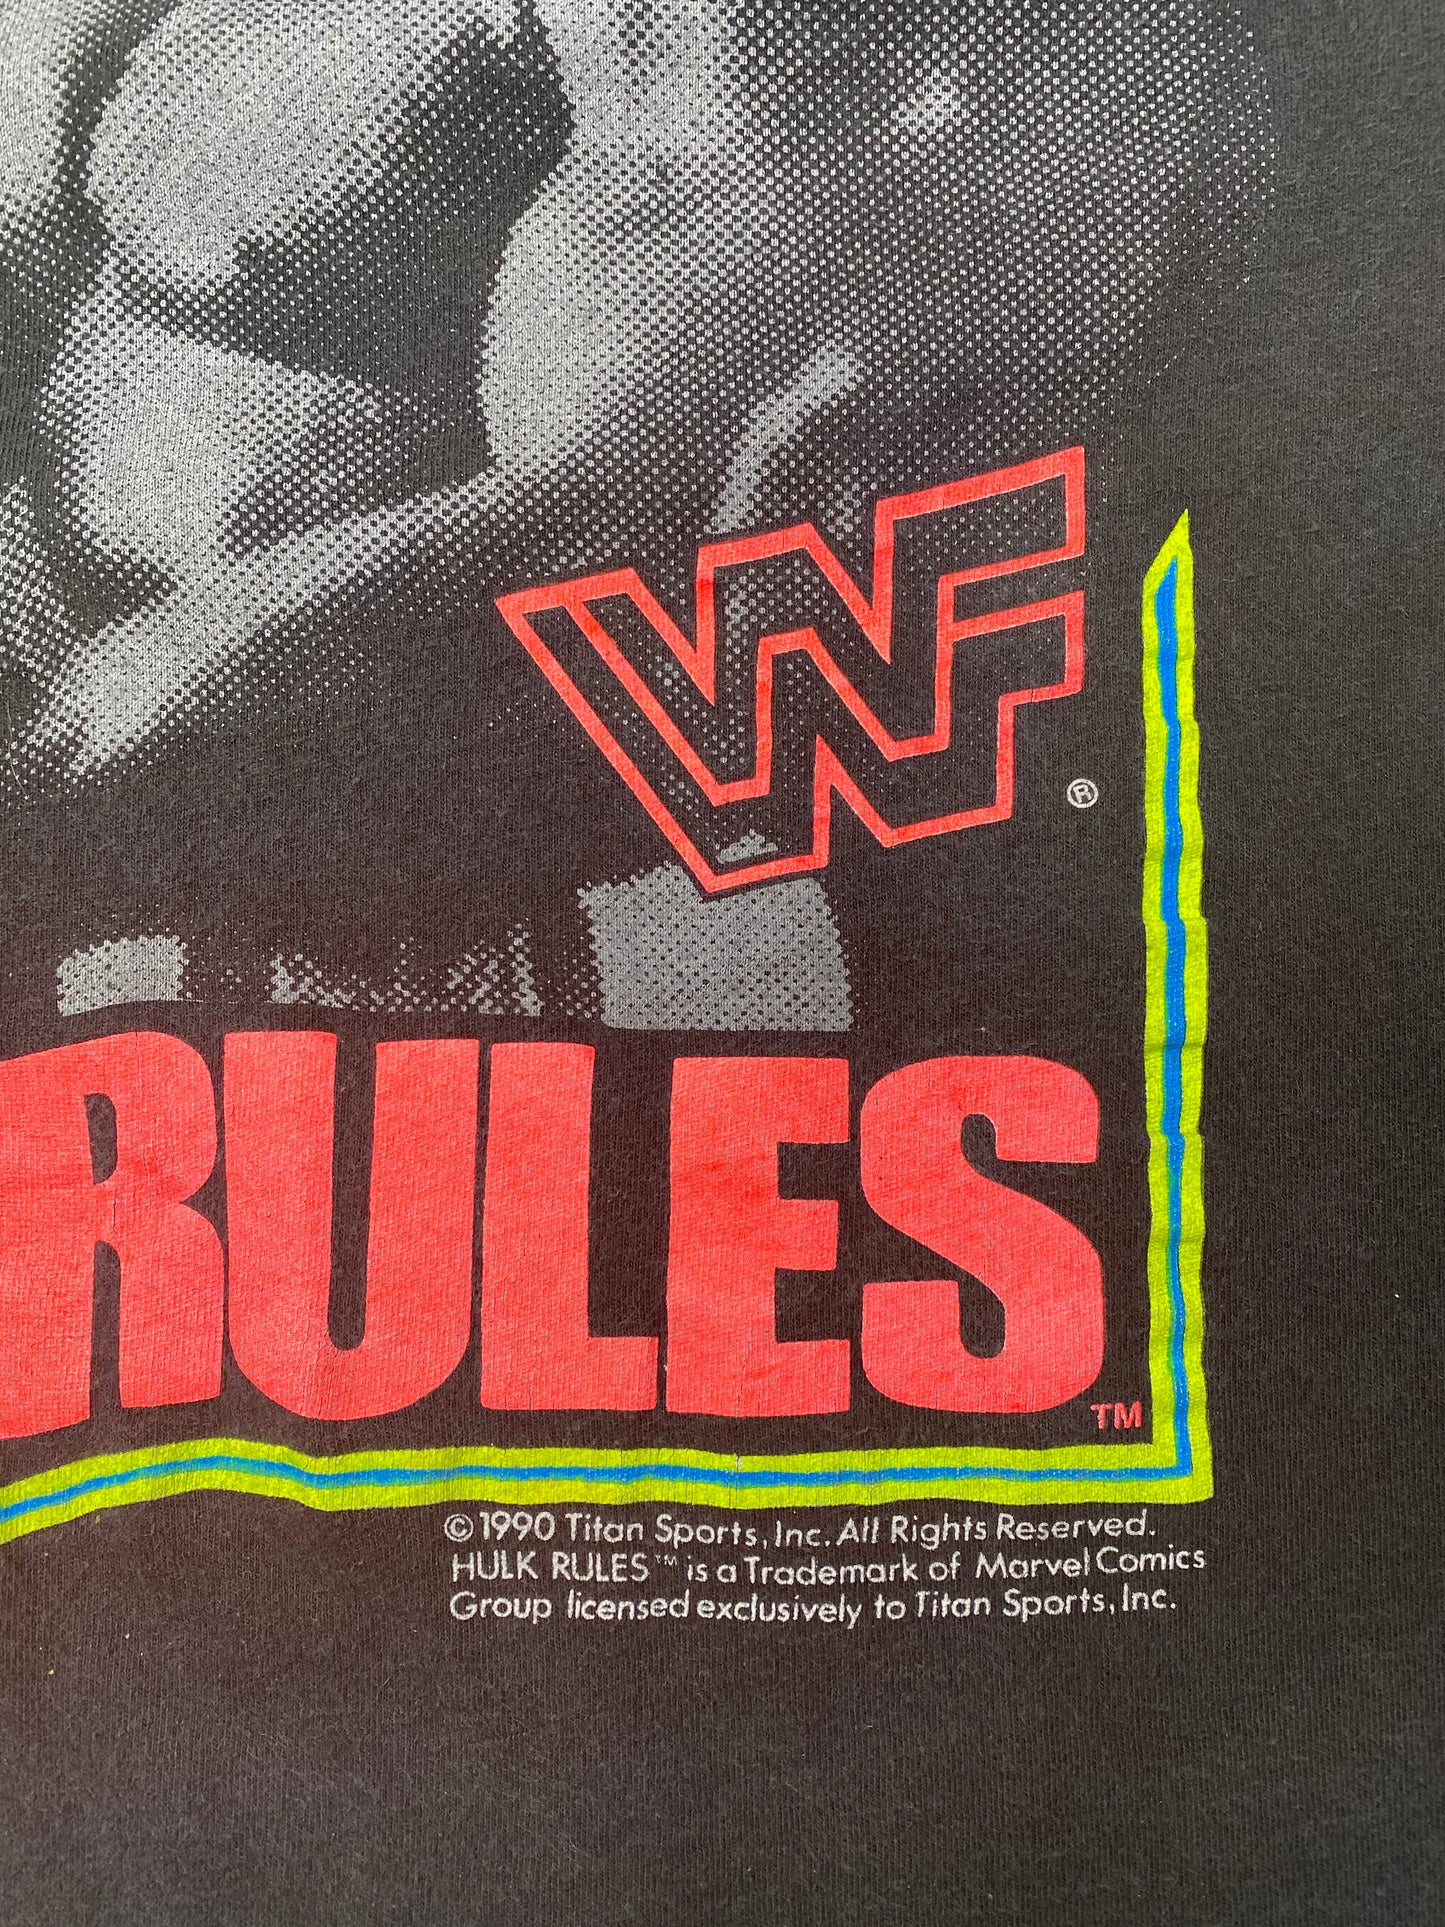 
                  
                    '90 WWF Hulk Hogan
                  
                